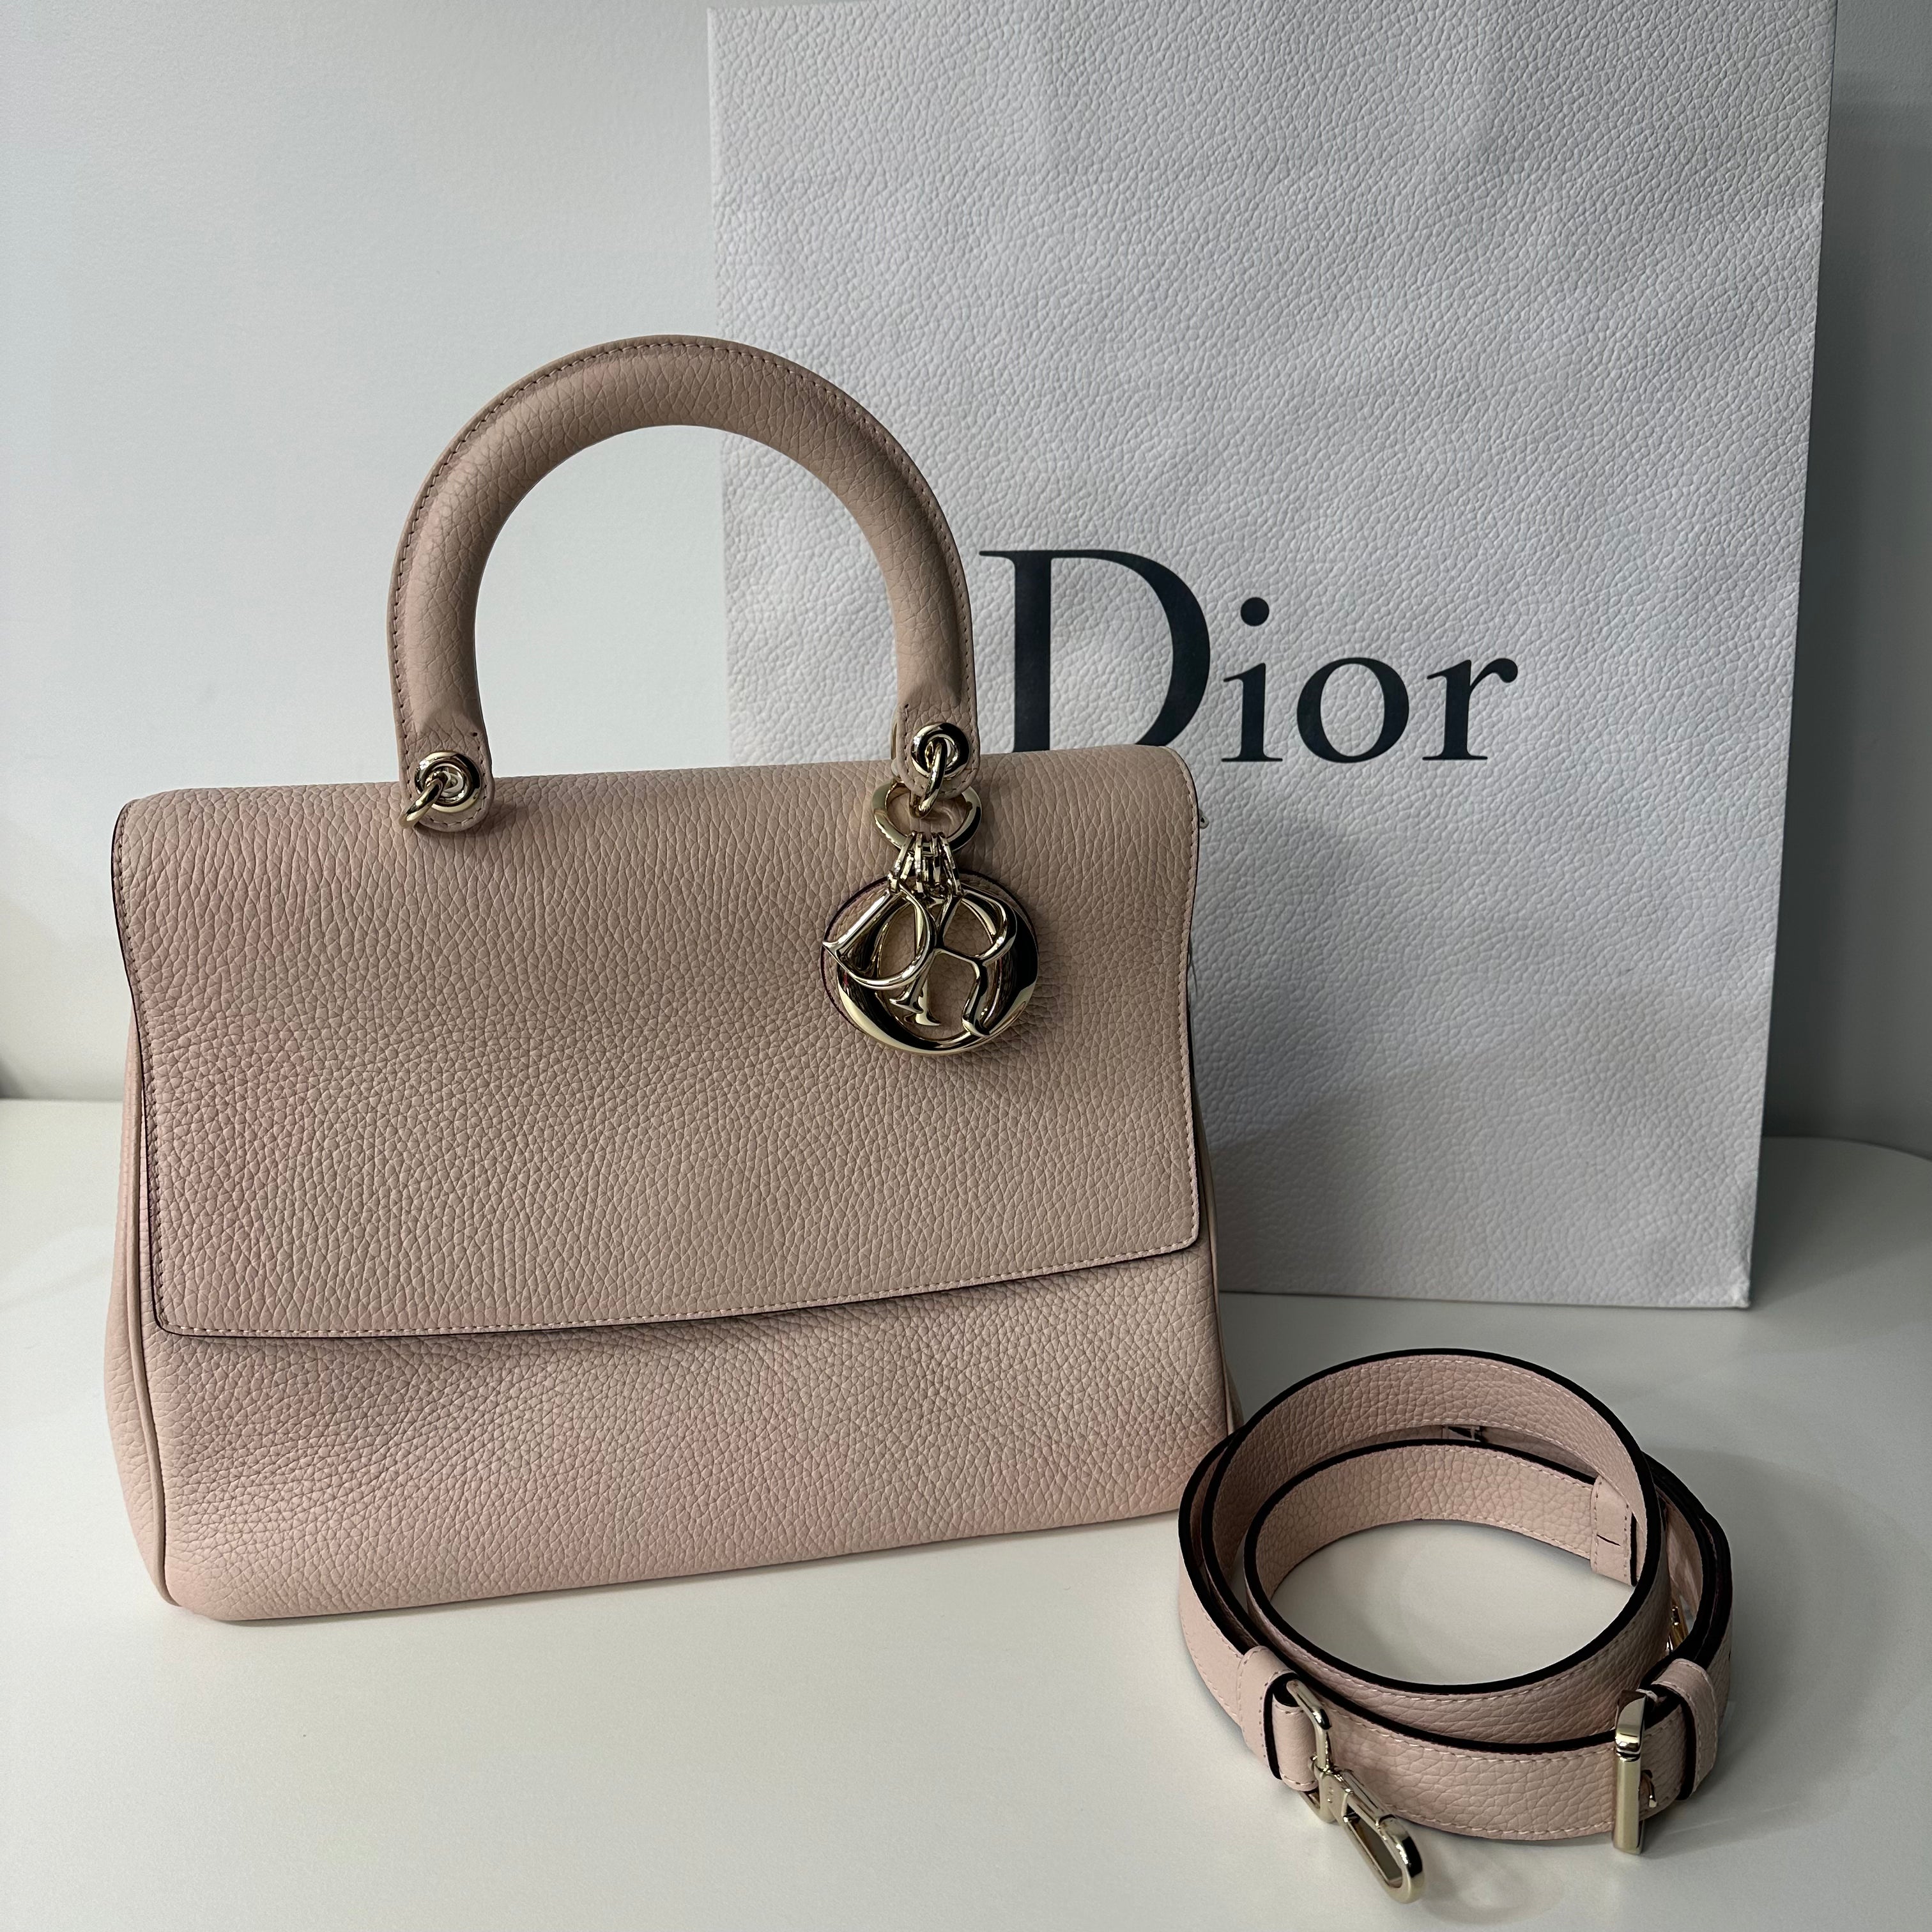 Dior - Be Dior 包